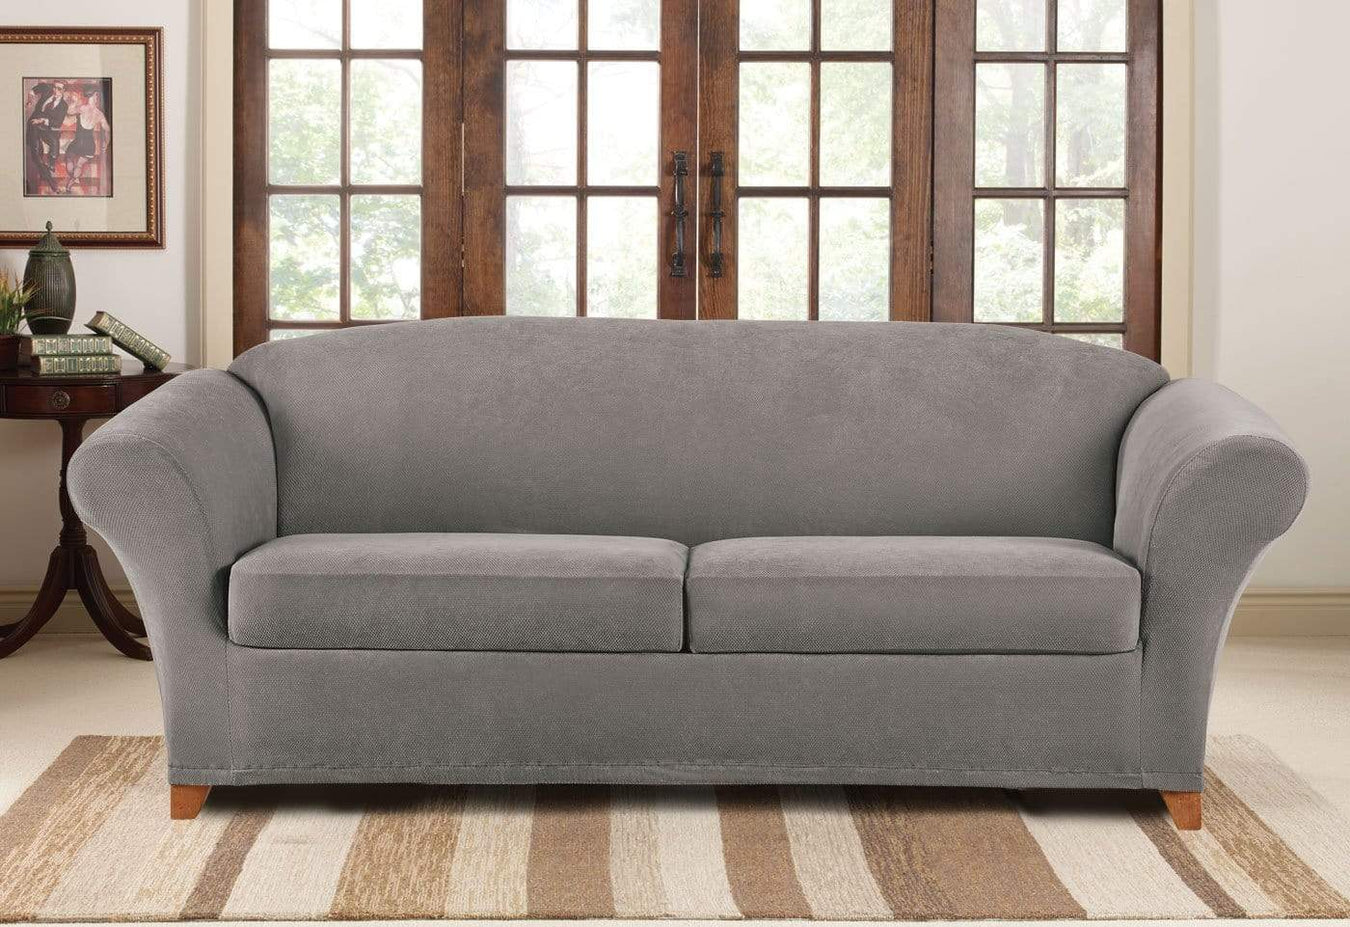 3 cushion sofa size